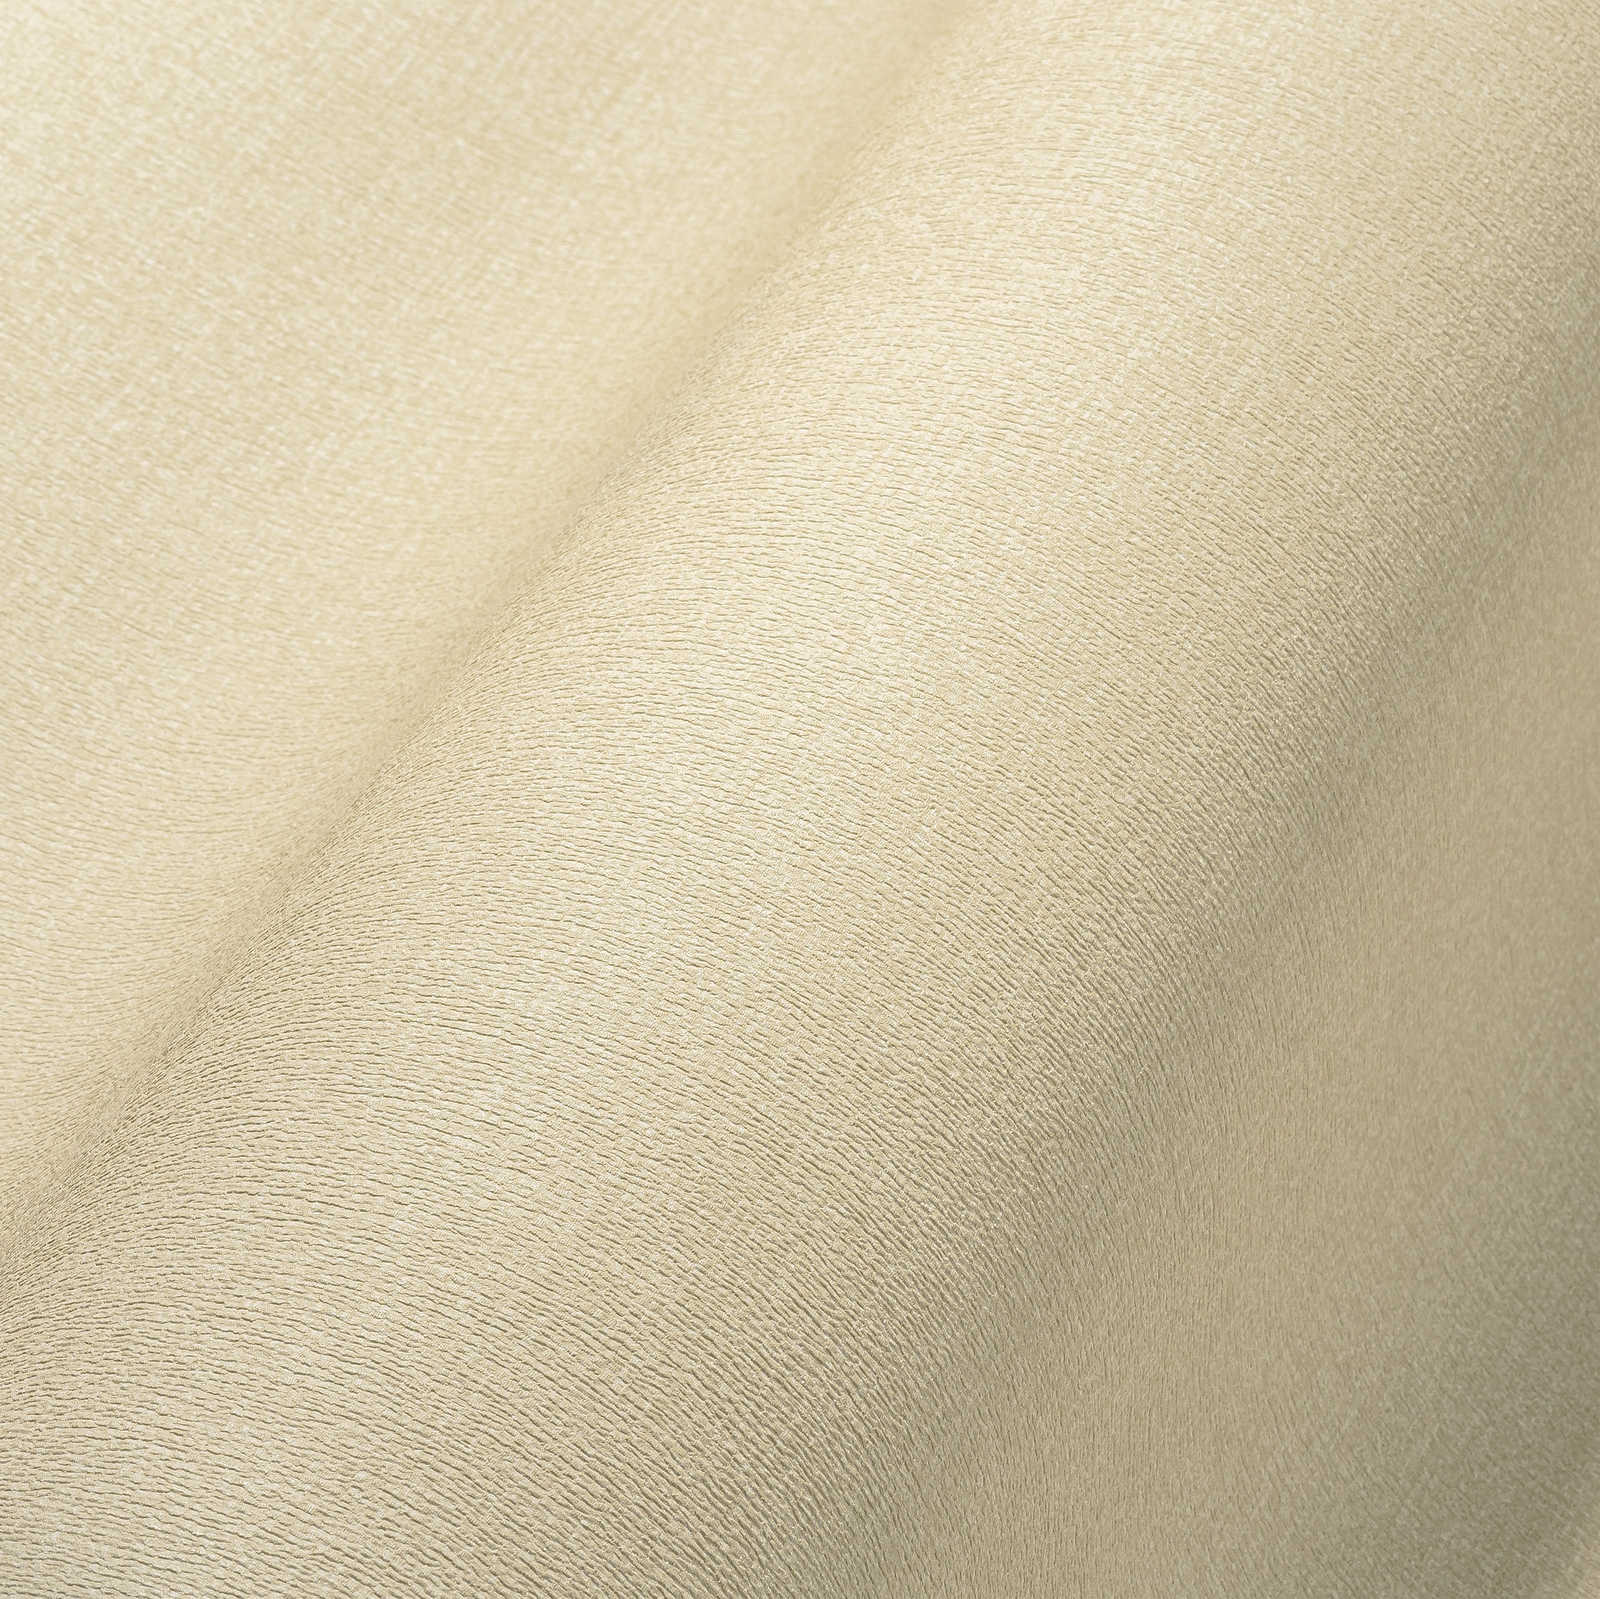             Papier peint uni légèrement structuré dans une teinte chaude - beige
        